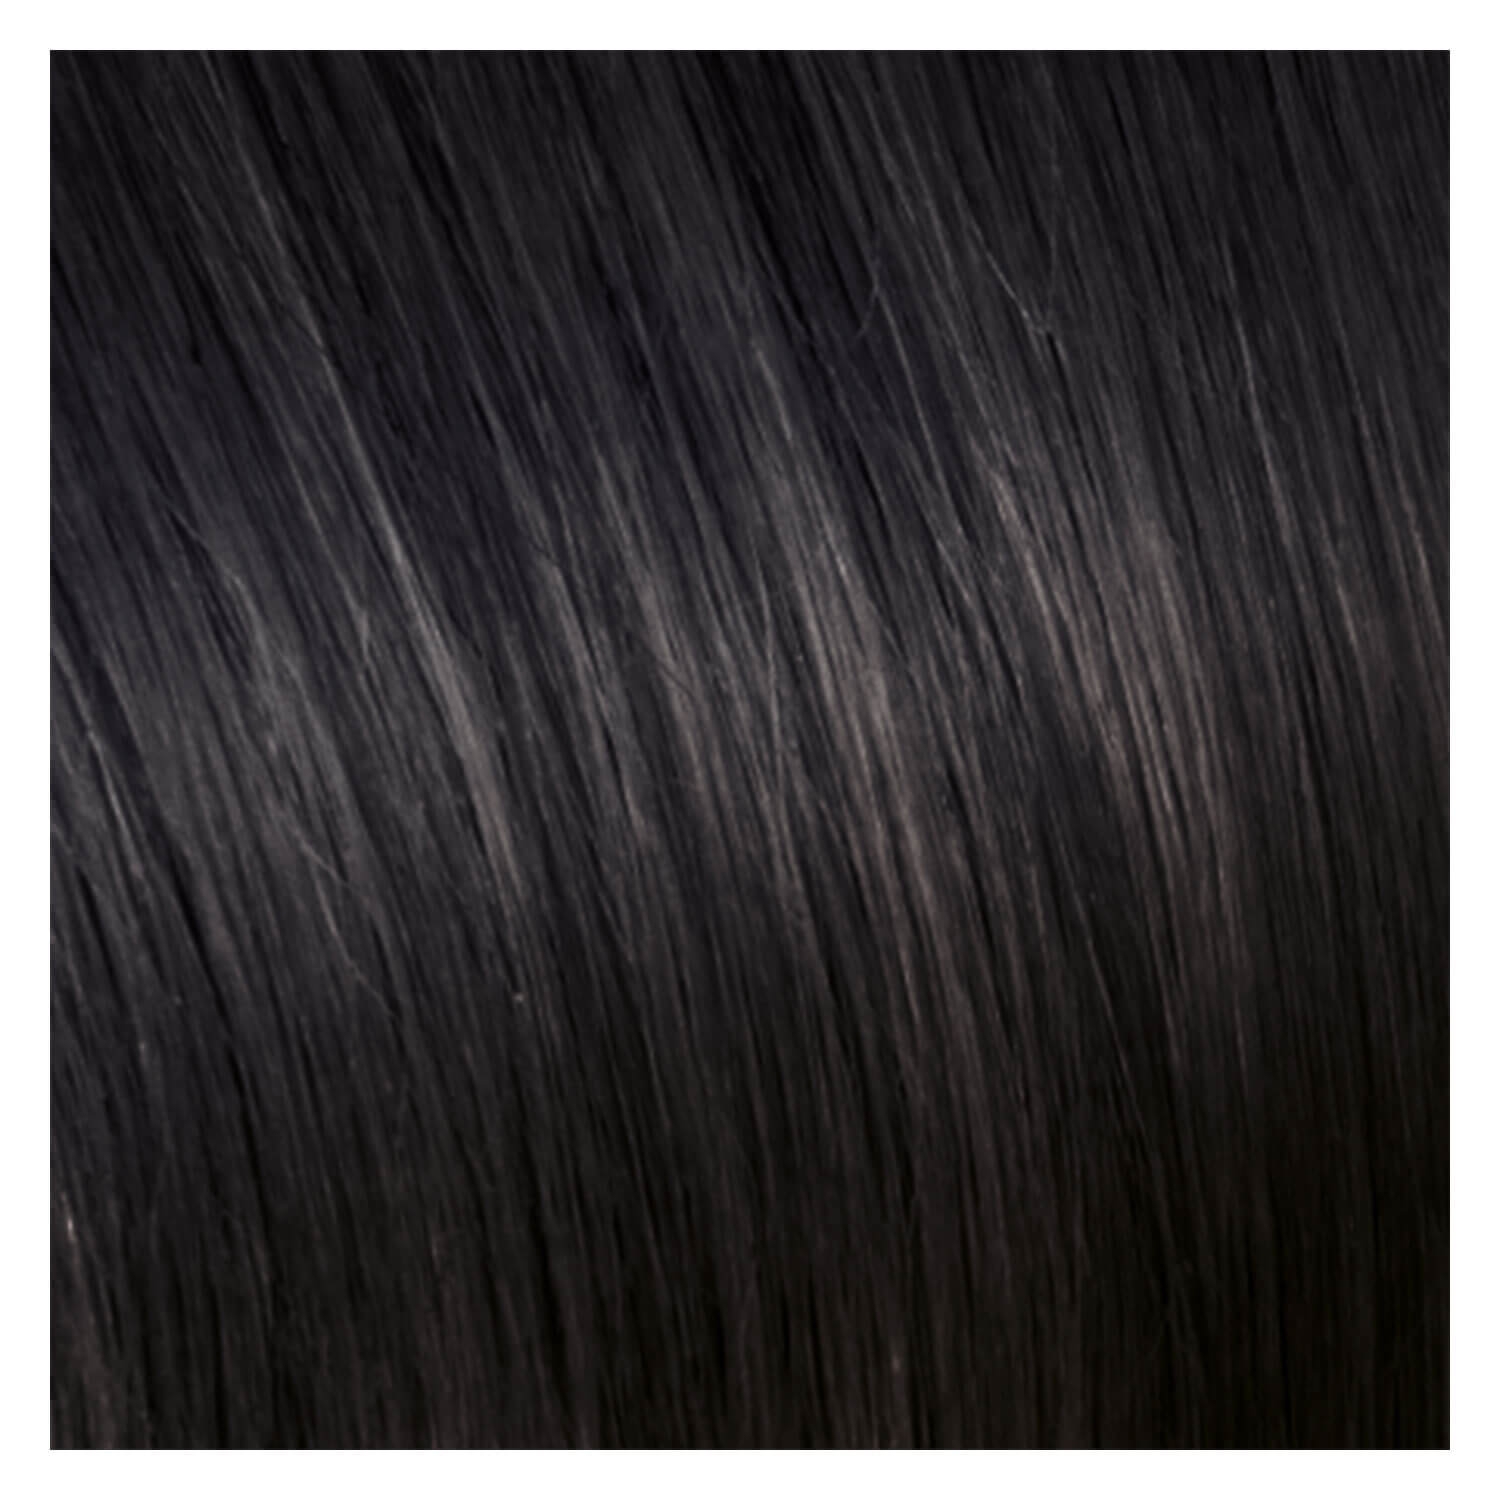 Produktbild von SHE Weft In-System Hair Extensions - 1B Schwarz 50/60cm